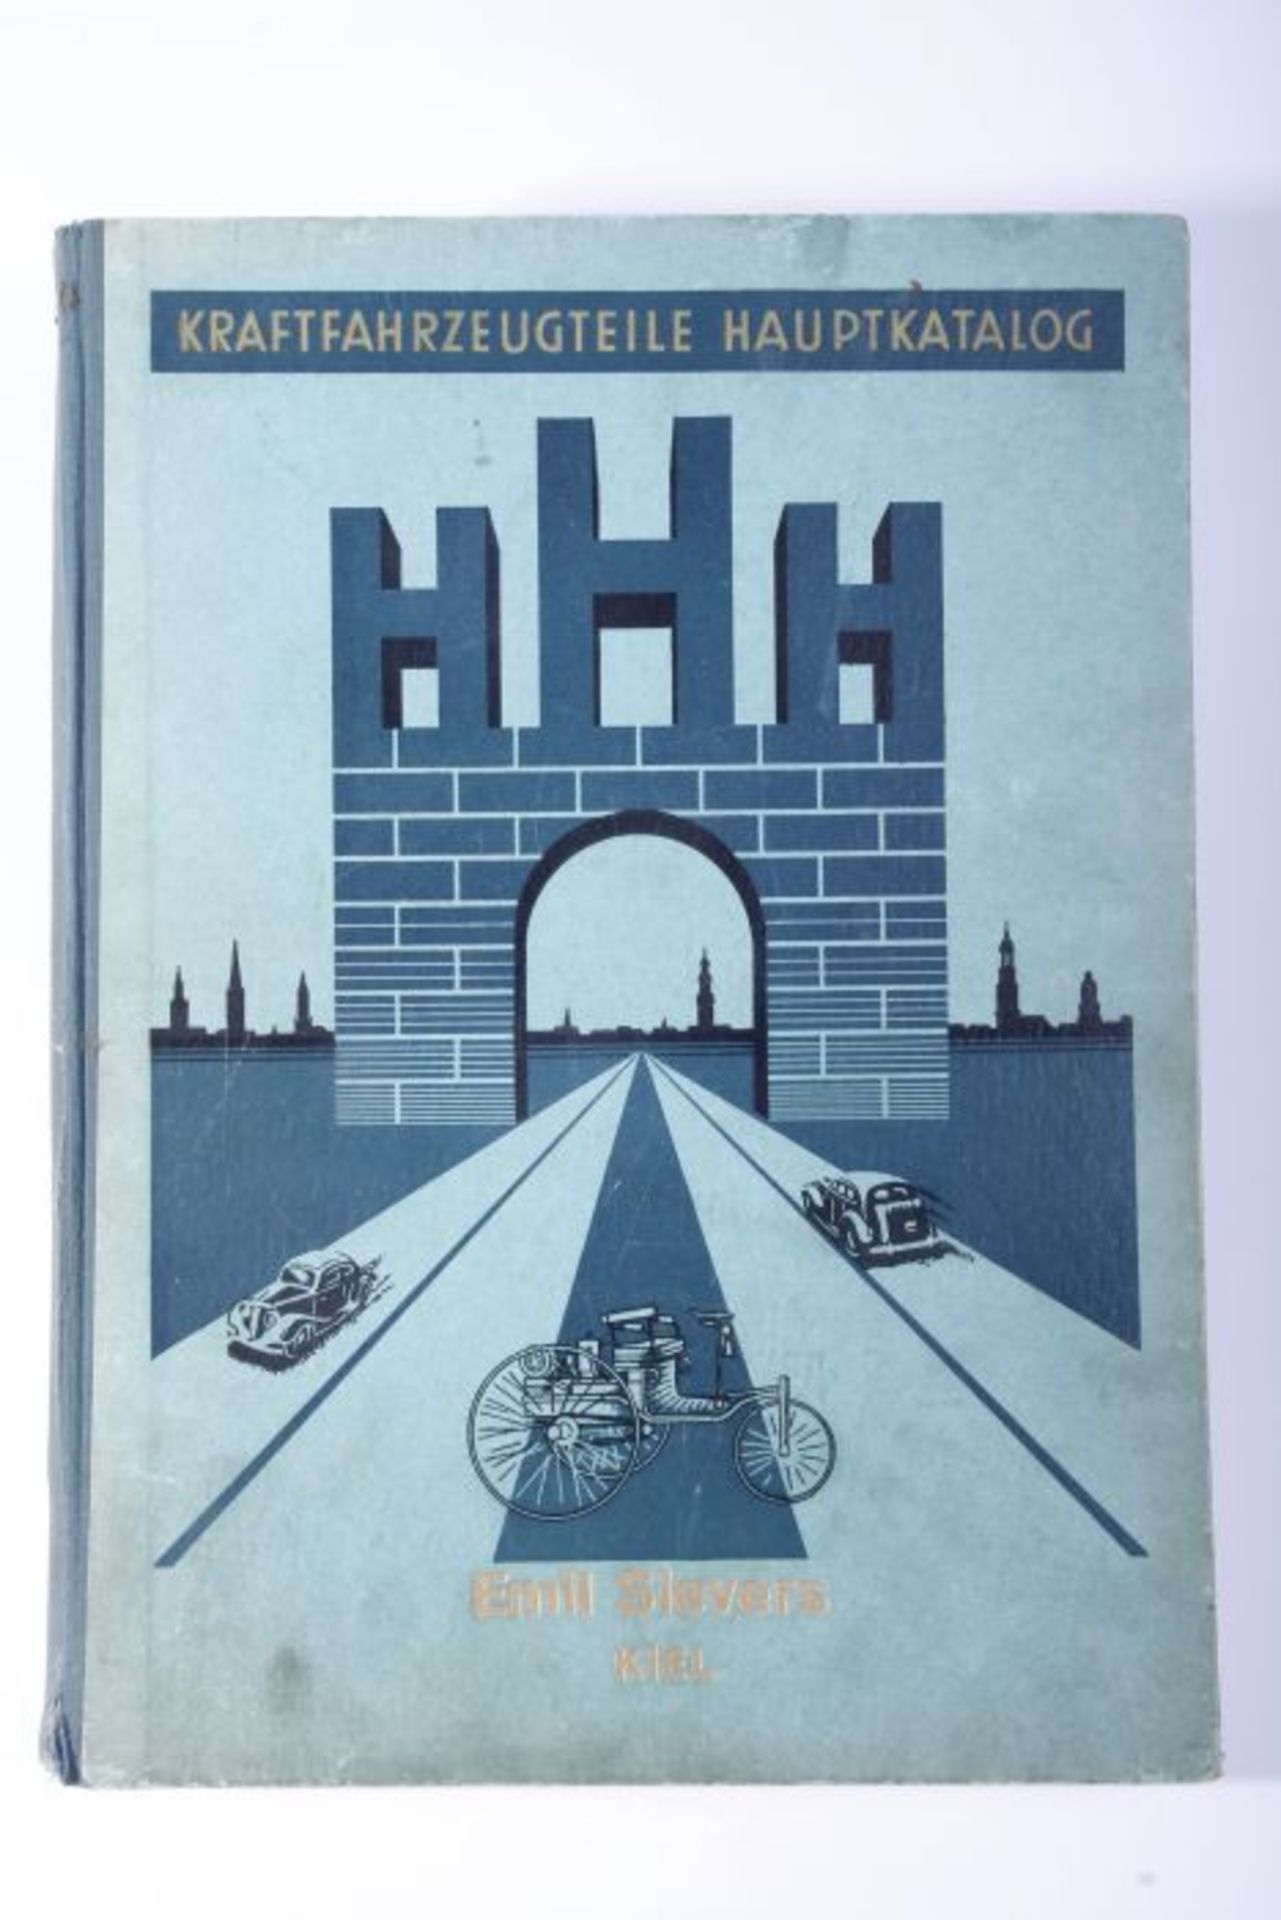 BuchKraftfahrzeugteile Hauptkatalog, H. Henning, Hamburg, 1939, grüner Pappeinband, 527 num. Seiten,